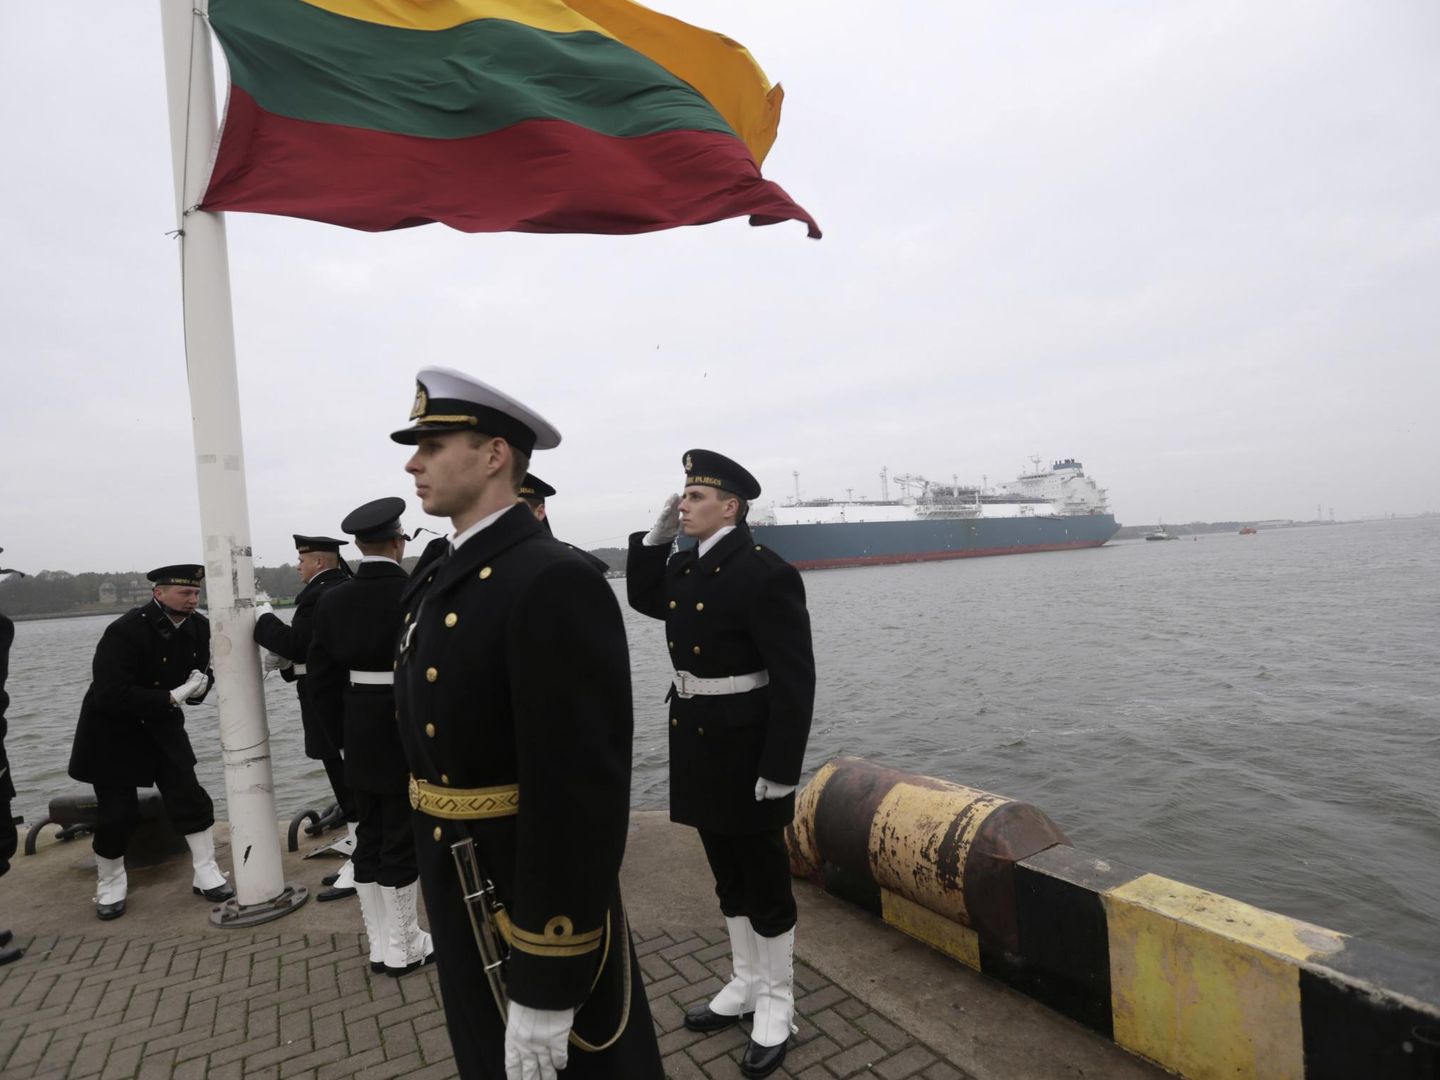 Miembros de la marina de Lituania izan la bandera nacional mientras la unidad flotante de regasificación y almacenaje (FSRU) 'Independence' es escoltada hasta la terminal de LNG en Klaip?da, en octubre de 2014. (Reuters)